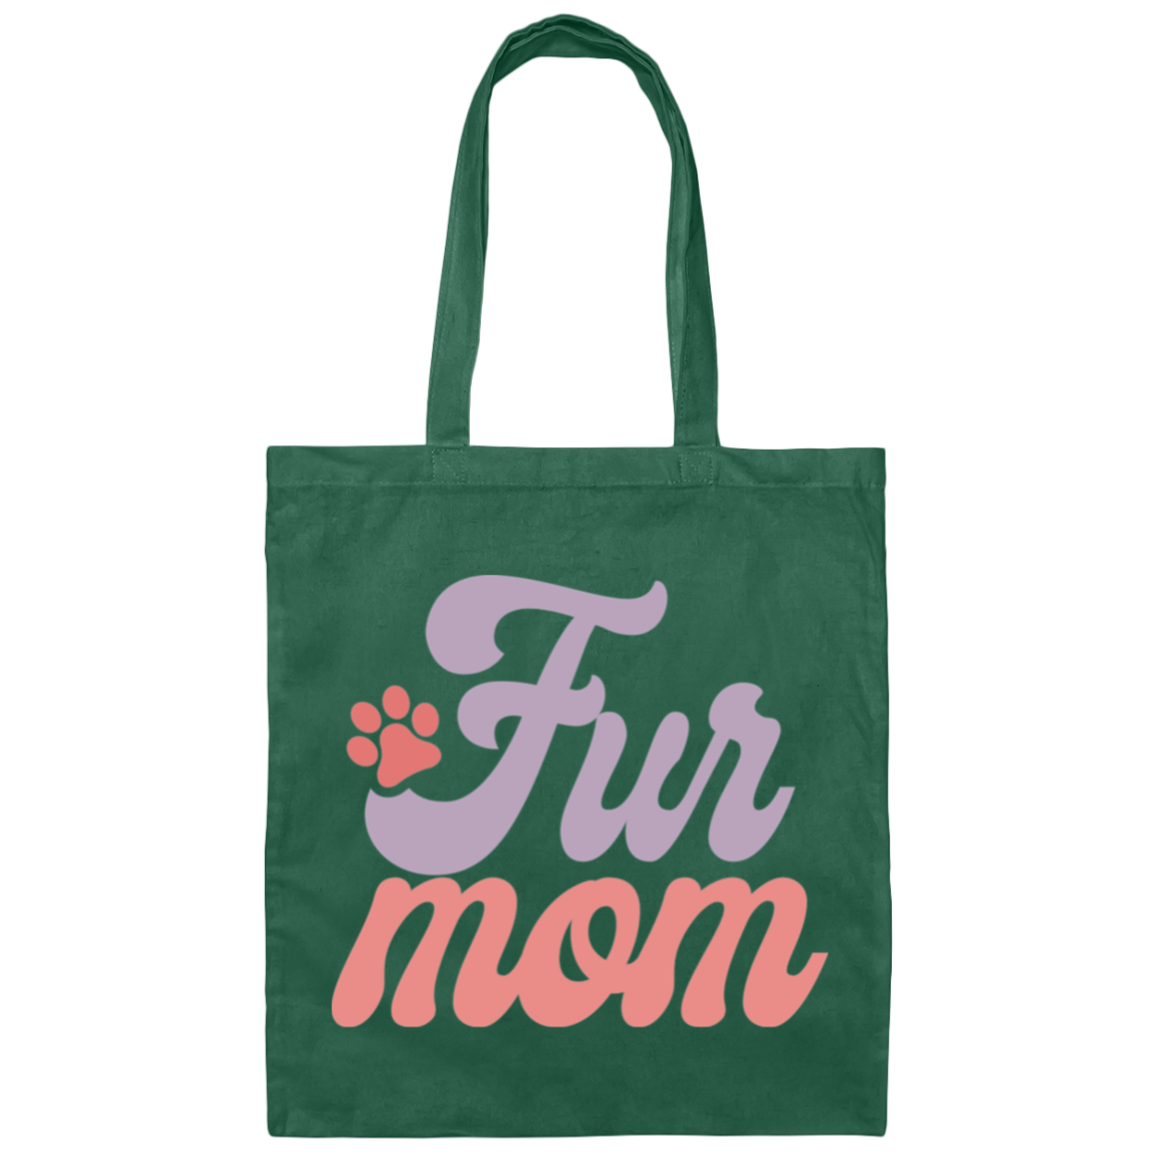 Fur Mom Dog Paw Print Canvas Tote Bag